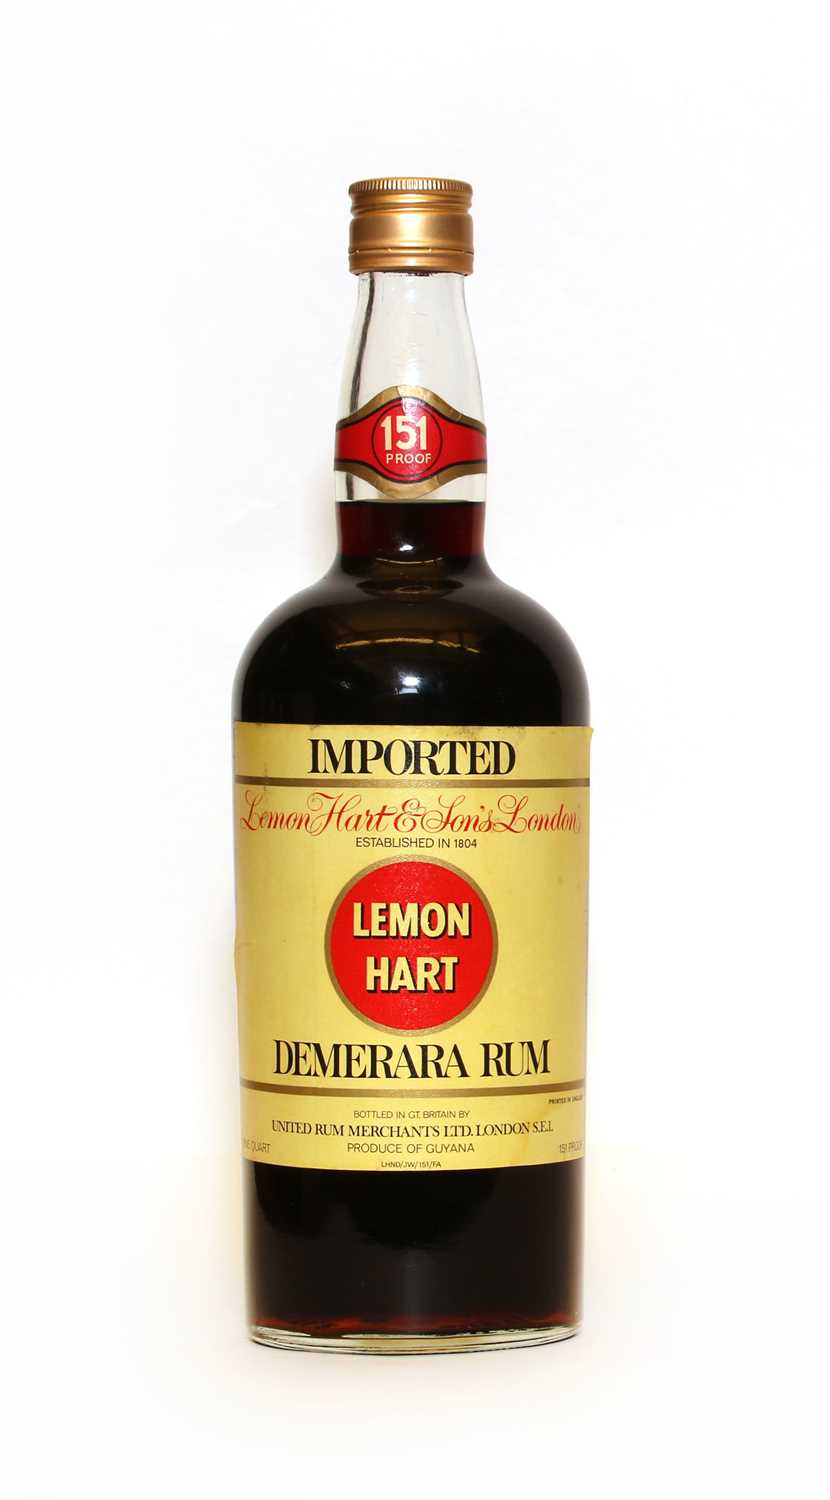 Lot 196 - Lemon Hart, Demerara Rum, 1970s bottling, 151 proof, one quart, one bottle